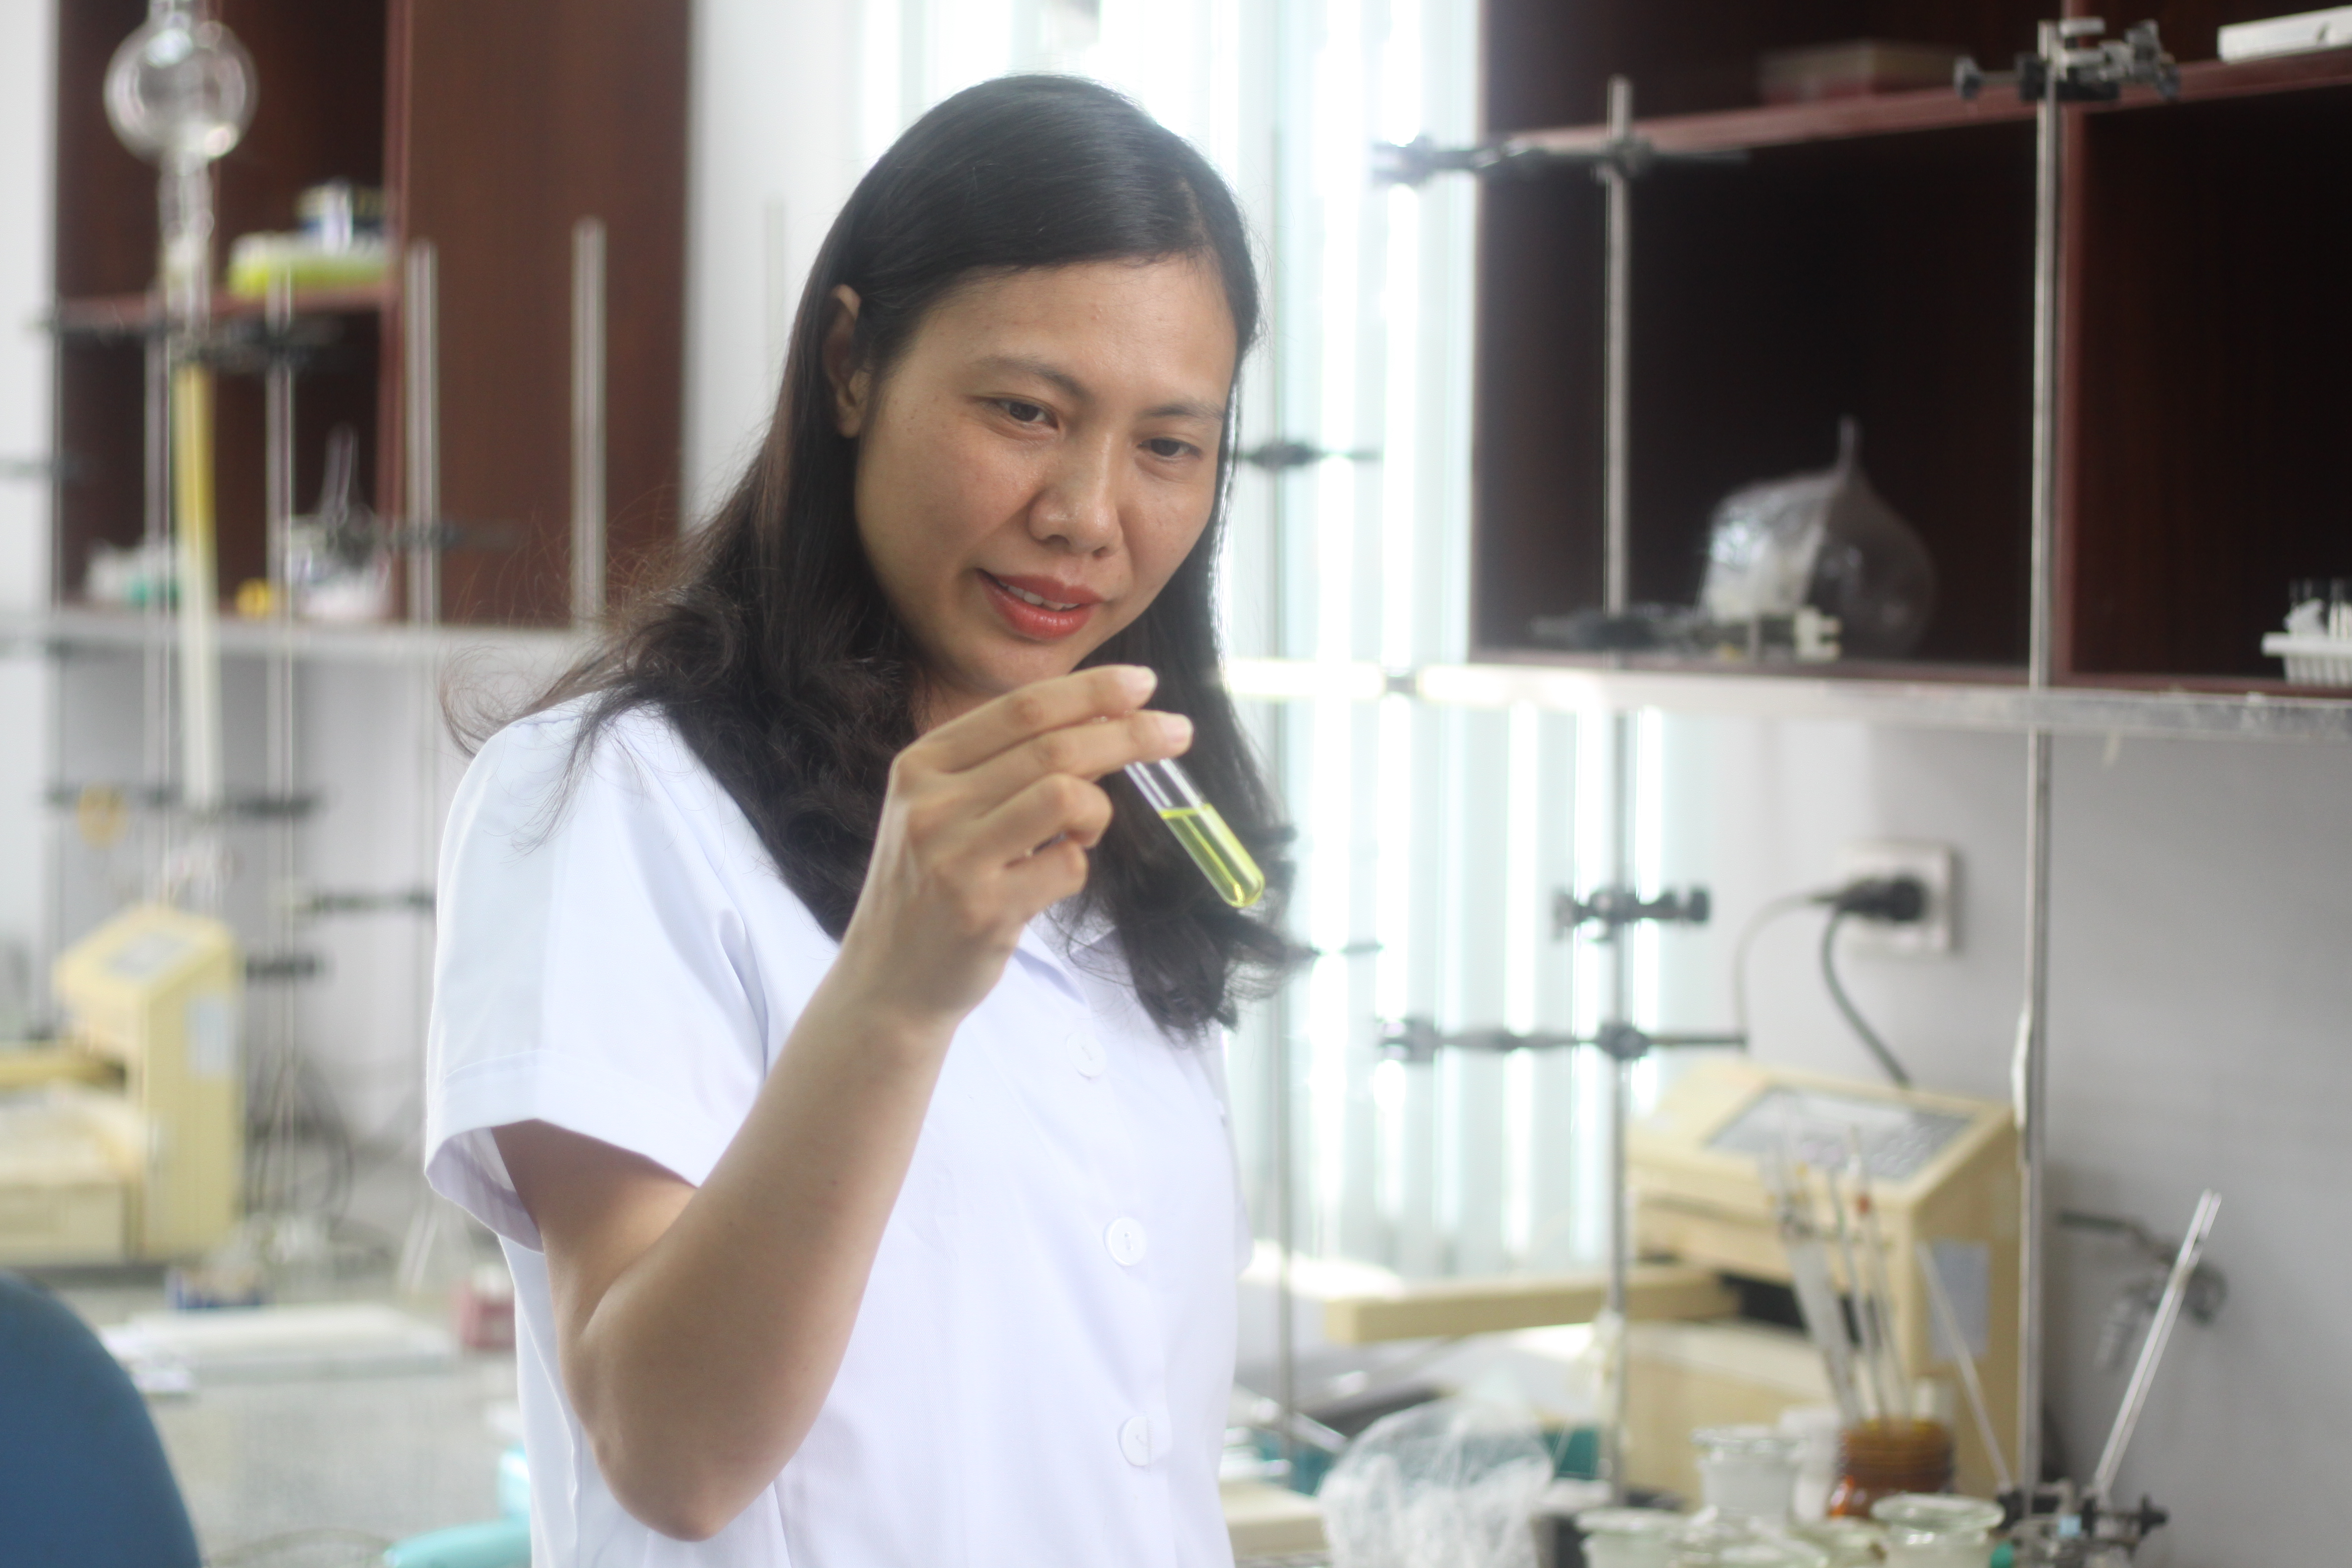 TS. Trần Thị Hồng Hạnh, Viện Hóa sinh biển, Viện Hàn lâm Khoa học & Công nghệ Việt Nam trong phòng thí nghiệm